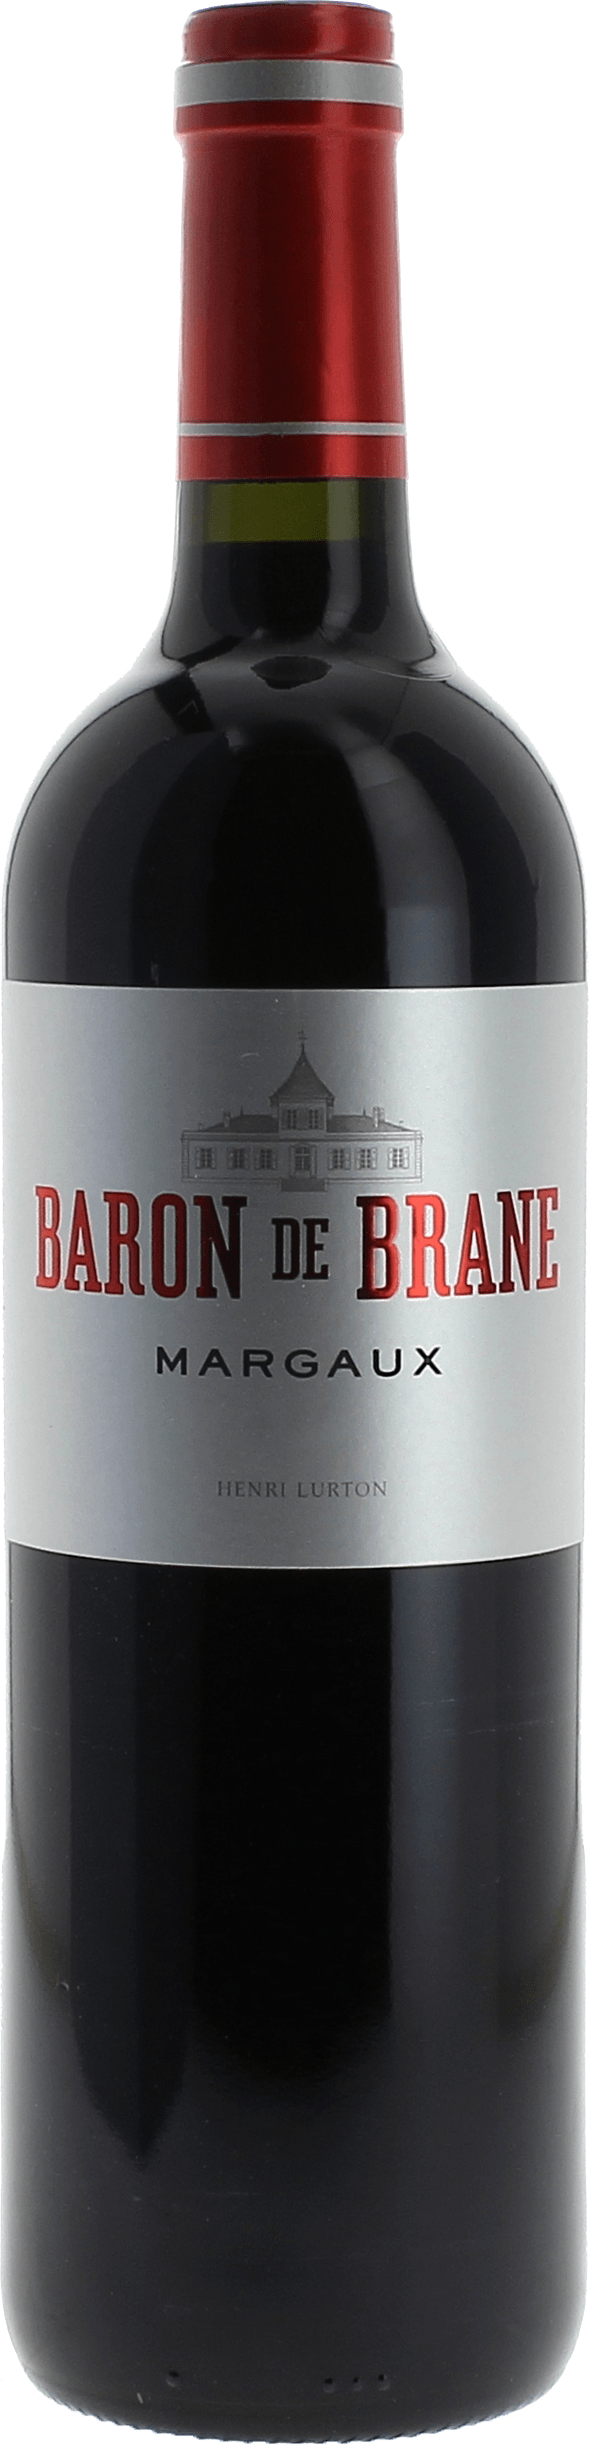 Baron de brane 2017 2nd vin du Chteau D'Issan Margaux, Bordeaux rouge